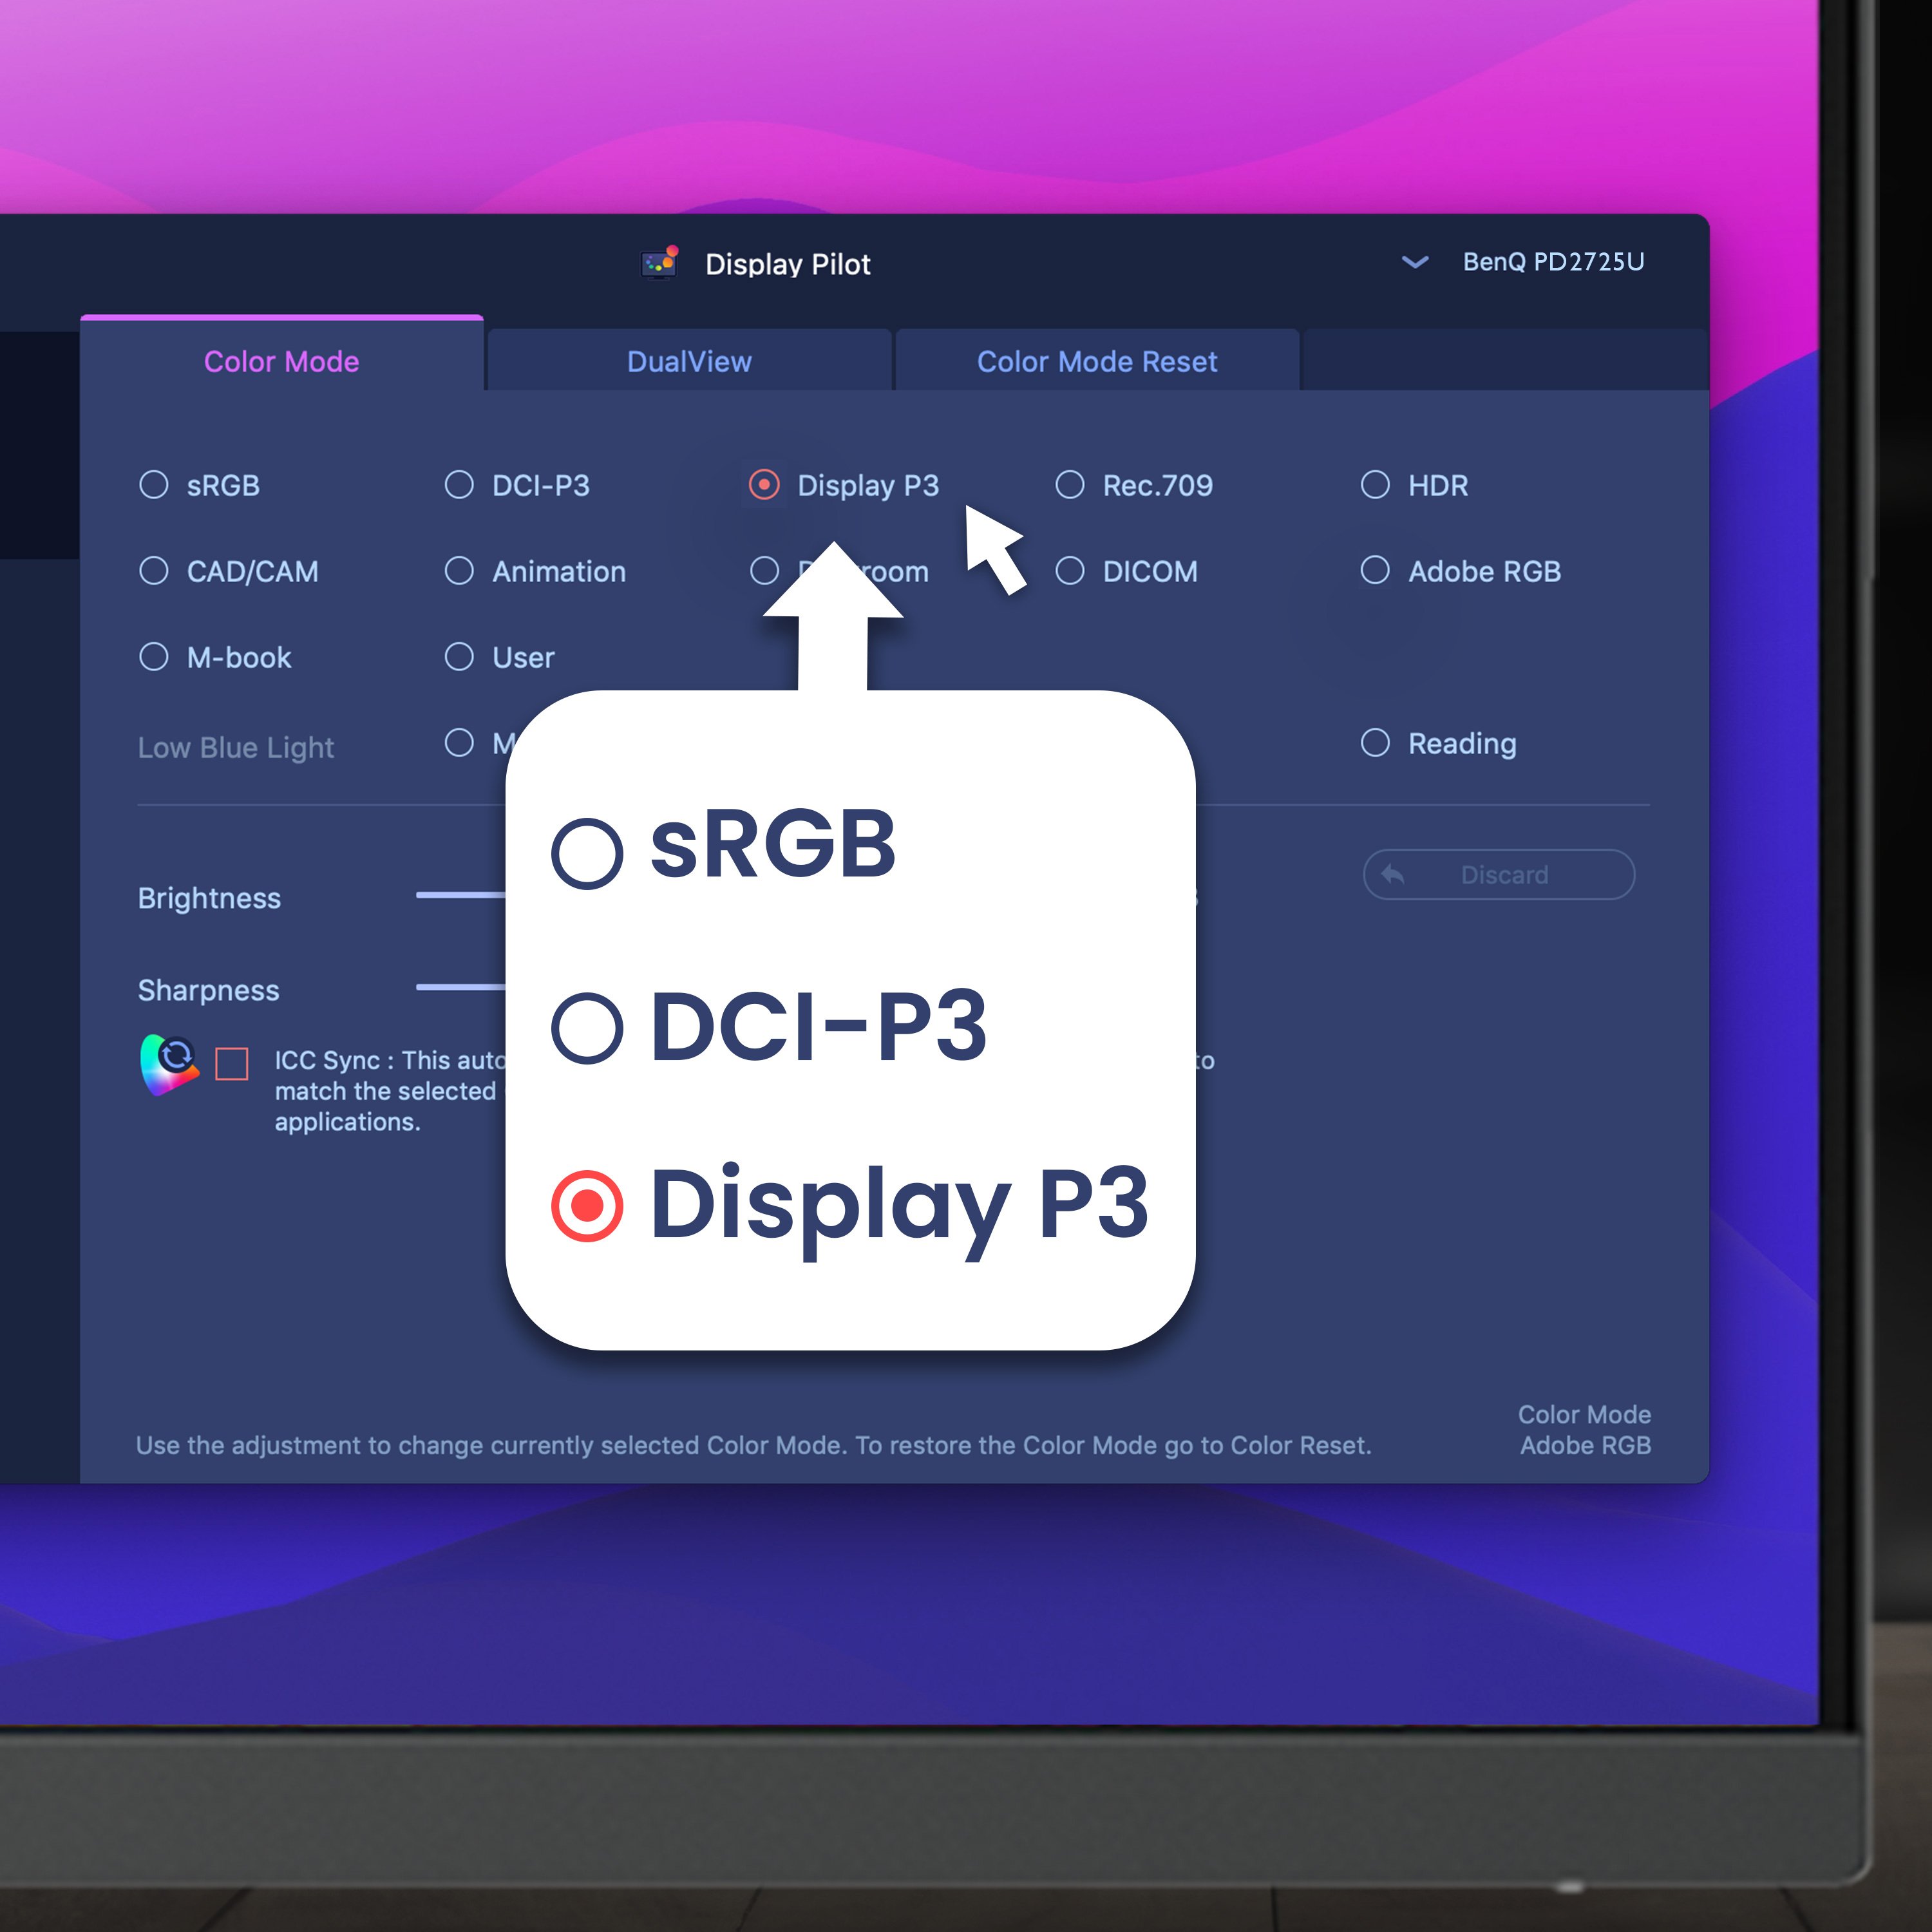 BenQ Display Pilot cung cấp các phím tắt cho phép truy cập linh hoạt các cài đặt hiển thị trên màn hình (on-screen display) như chuyển đổi chế độ màu, v.v.